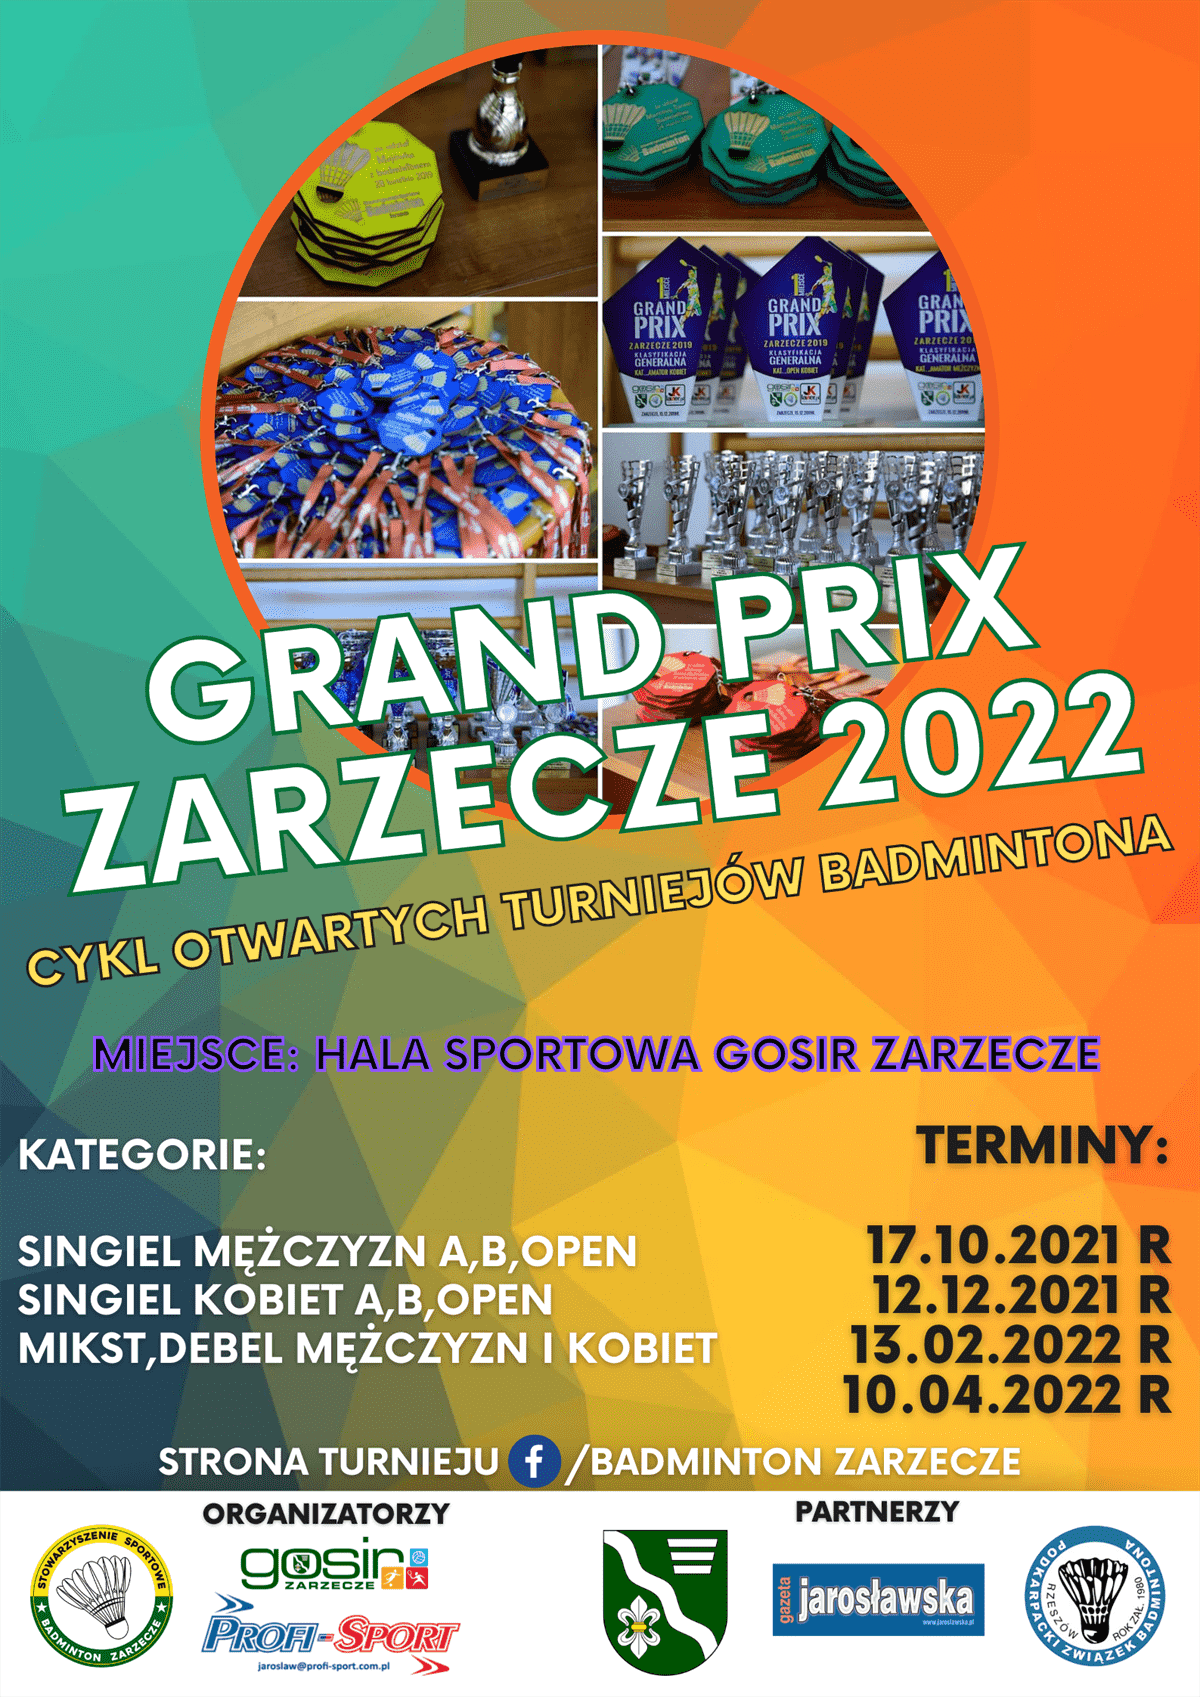 stowarzyszenie-sportowe-badminton-zarzecze-zaprasza-na-pierwszy-turniej-z-cyklu-grand-prix-zarzecze-2021-2022